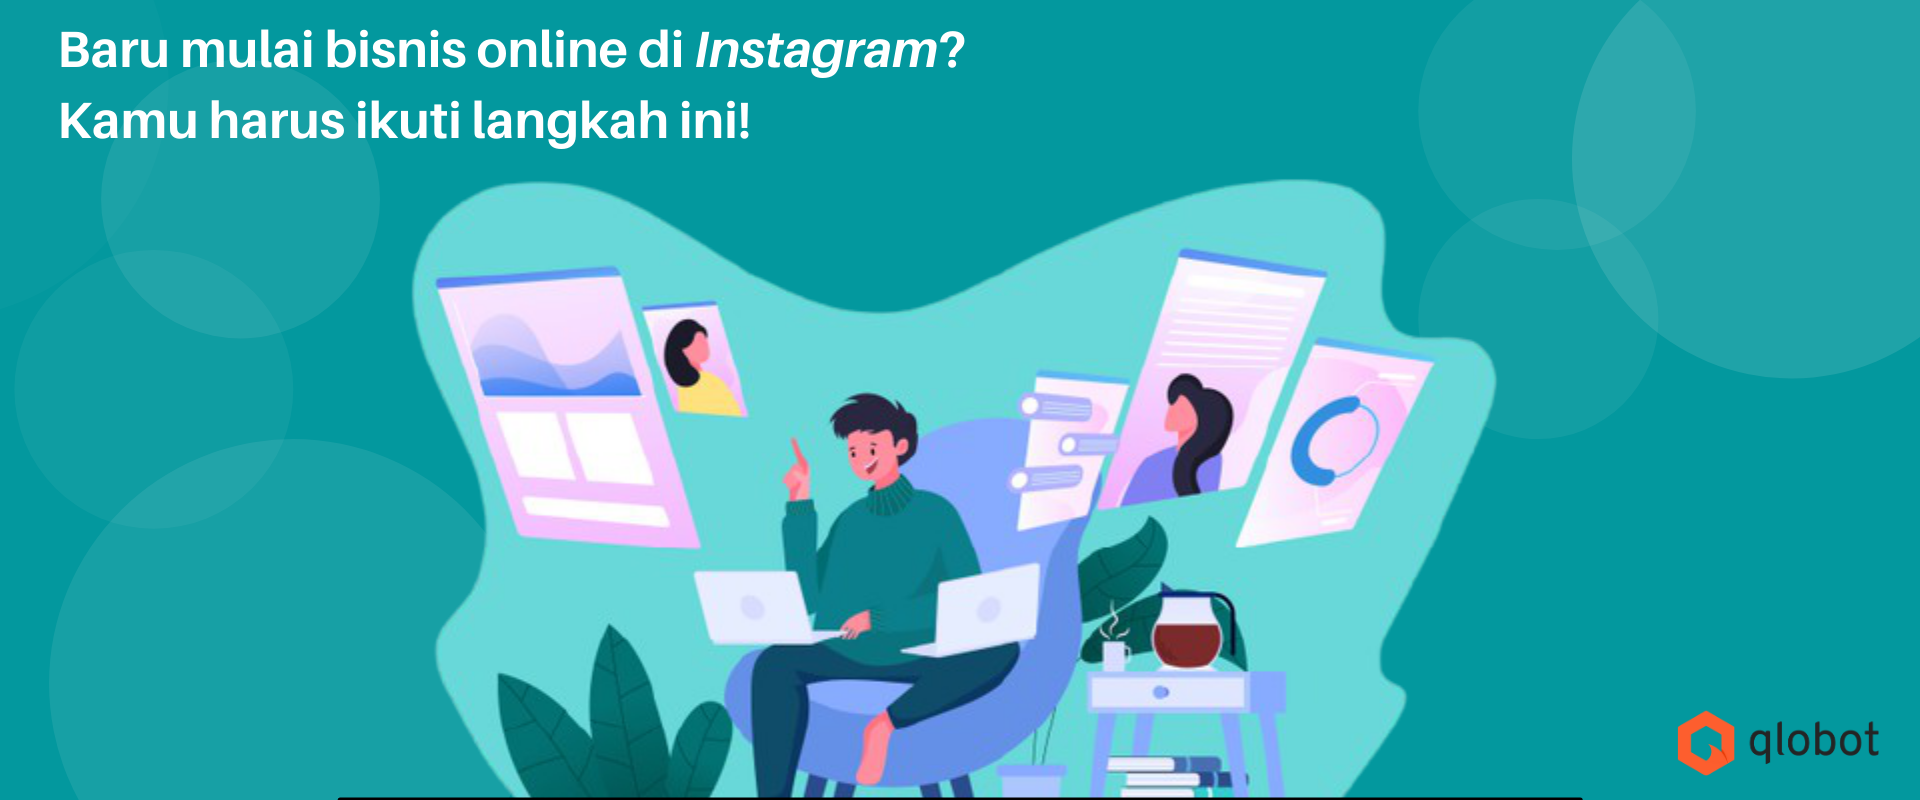 Baru mulai bisnis online di Instagram? Kamu harus ikuti langkah ini!